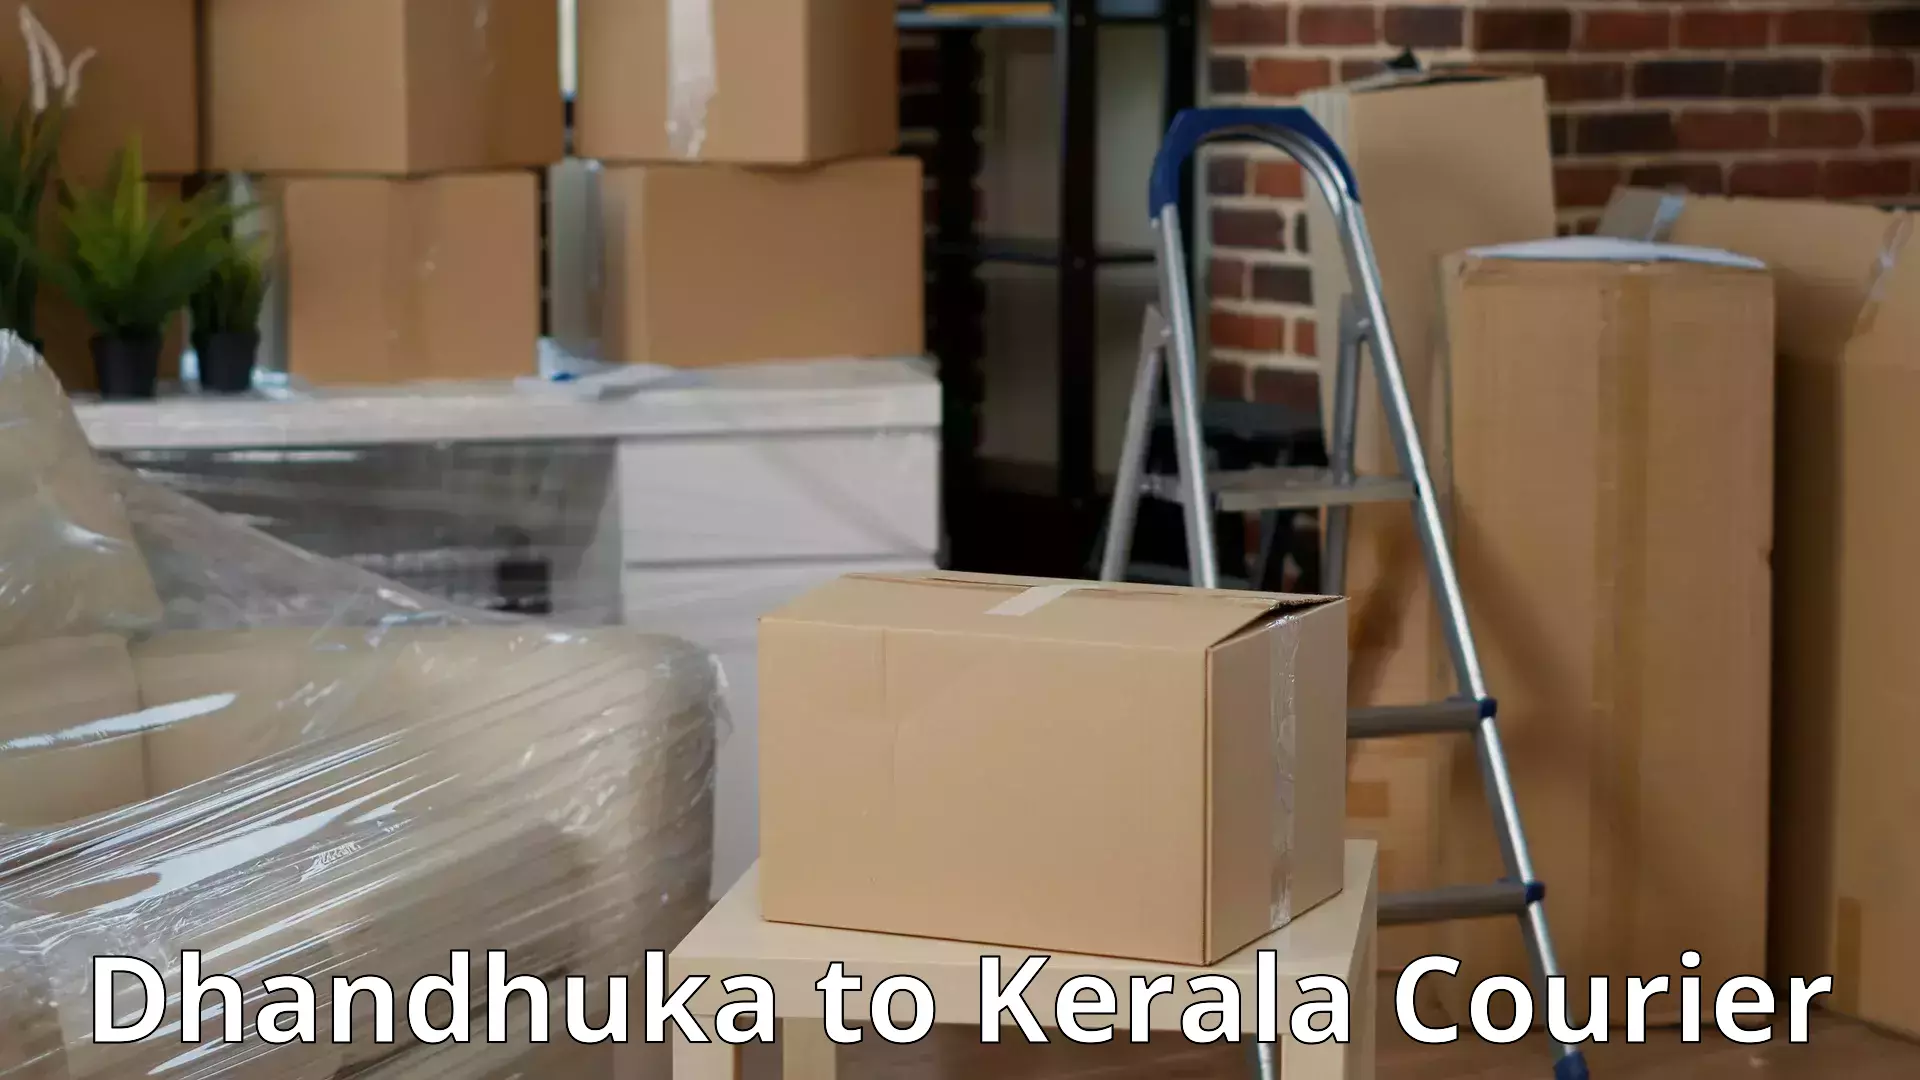 Skilled furniture transporters Dhandhuka to Munnar